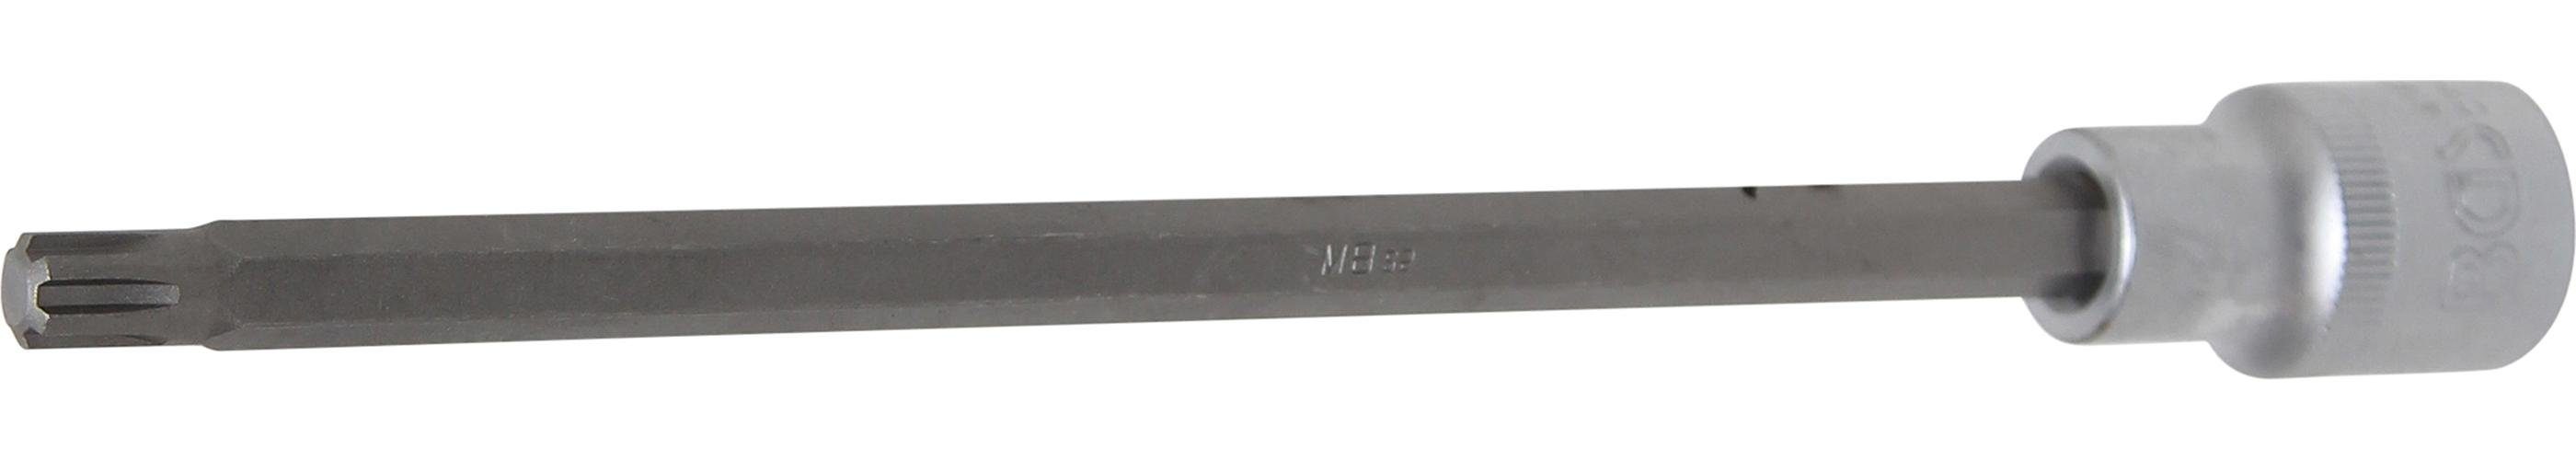 BGS technic Bit-Schraubendreher Bit-Einsatz, Länge 200 mm, Antrieb Innenvierkant 12,5 mm (1/2), Keil-Profil (für RIBE) M8